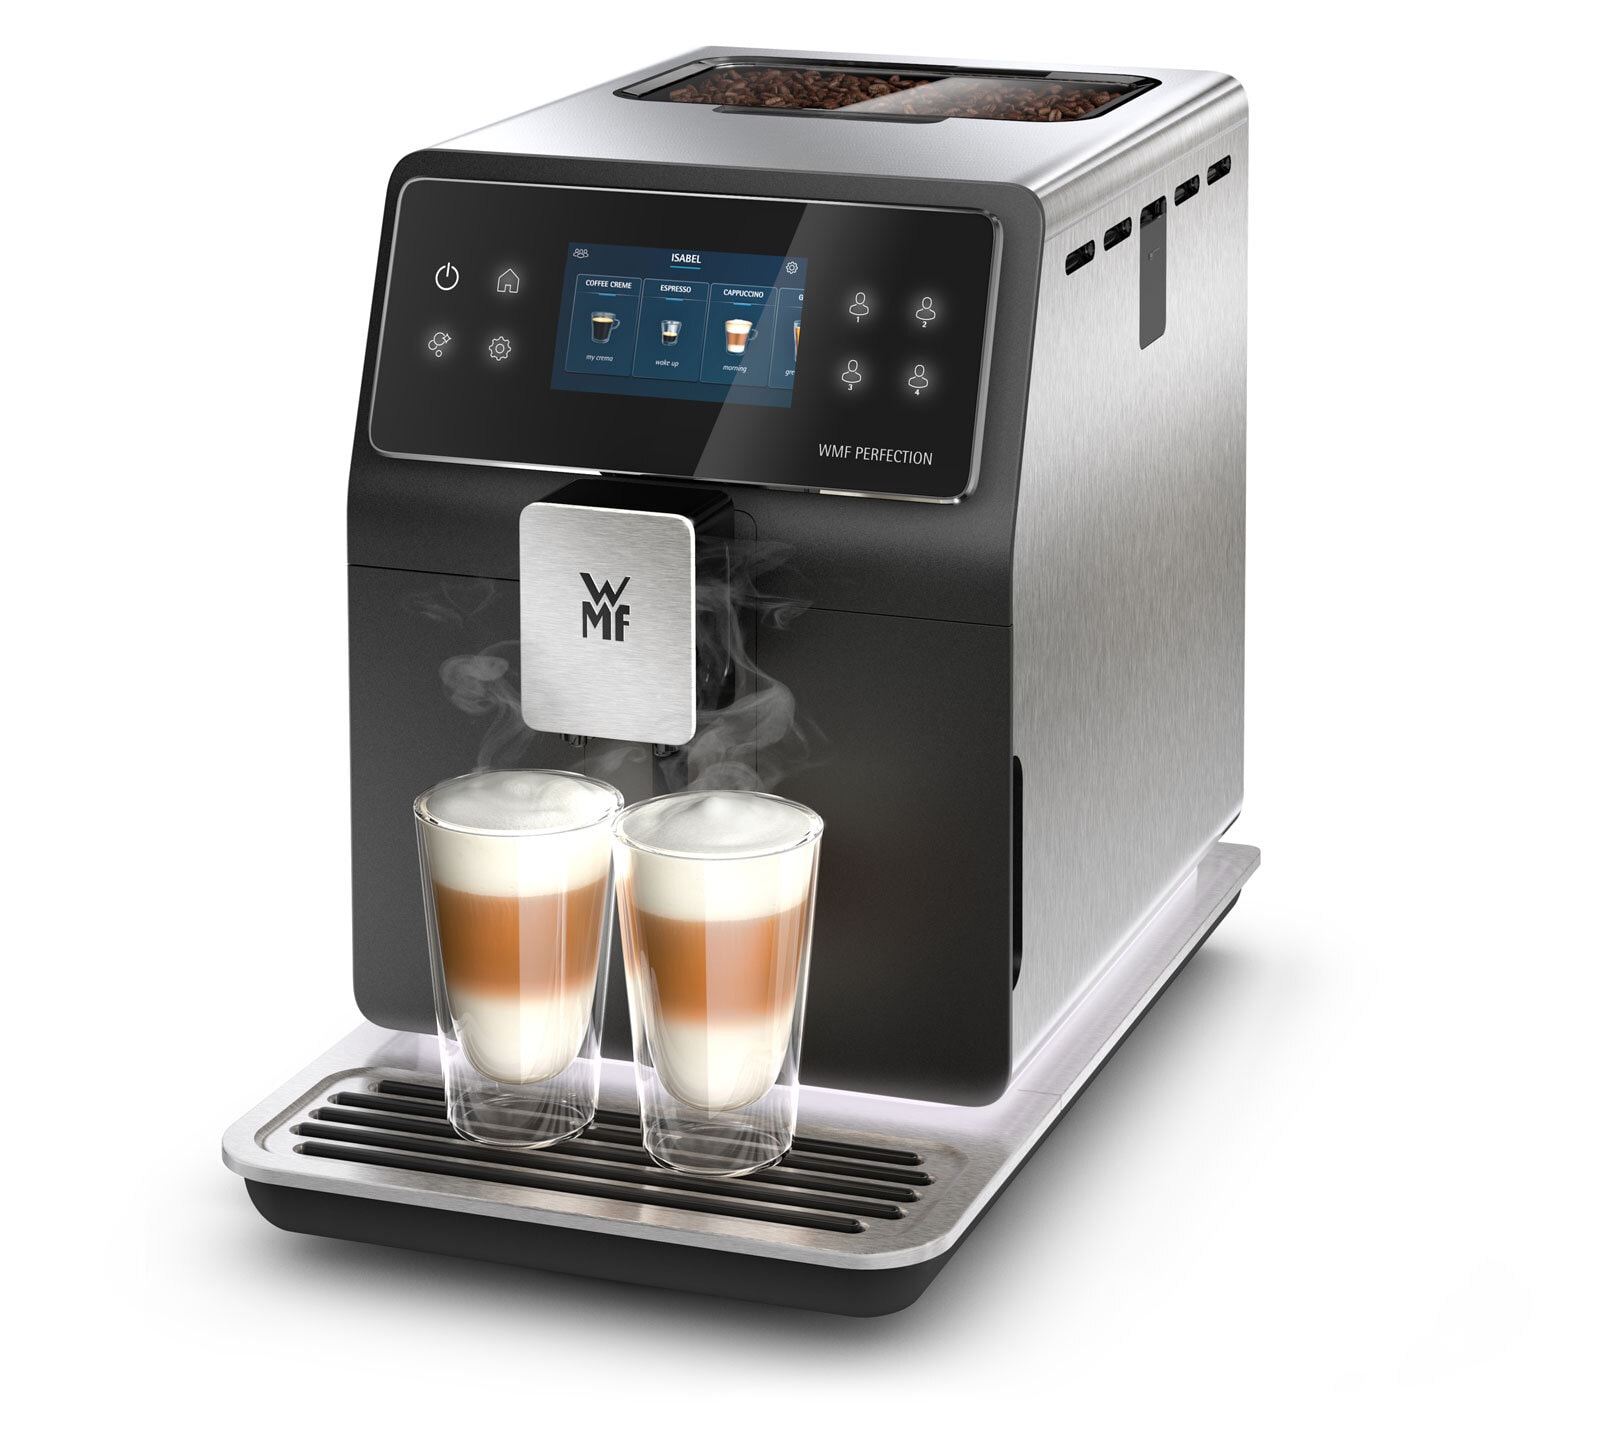 WMF Kaffeevollautomat PERFECTION 840L